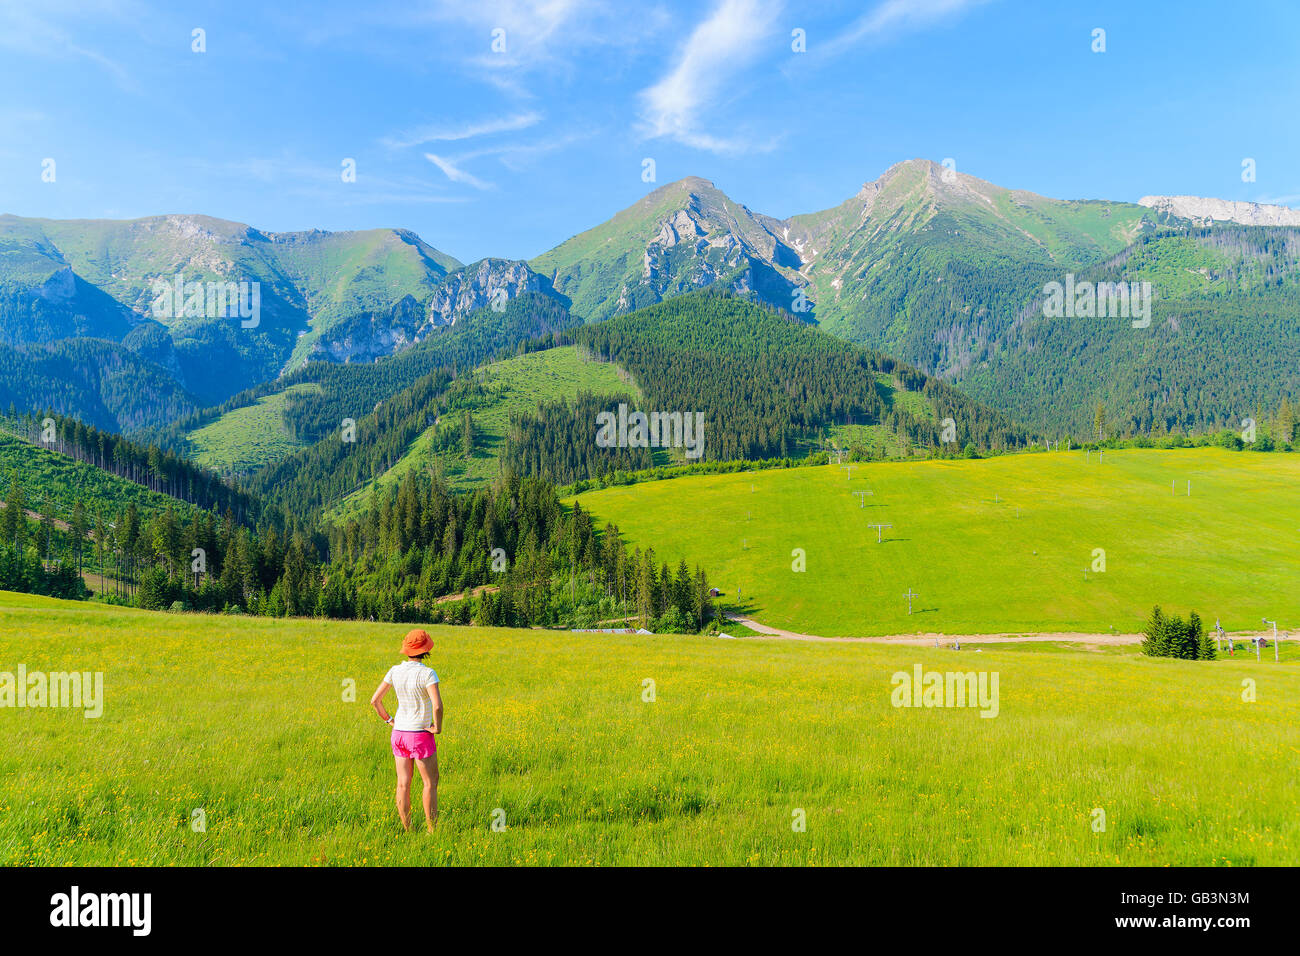 Joven turista pararse en la pradera verde con flores amarillas y mirando el paisaje de verano de las Montañas Tatra, Eslovaquia Foto de stock